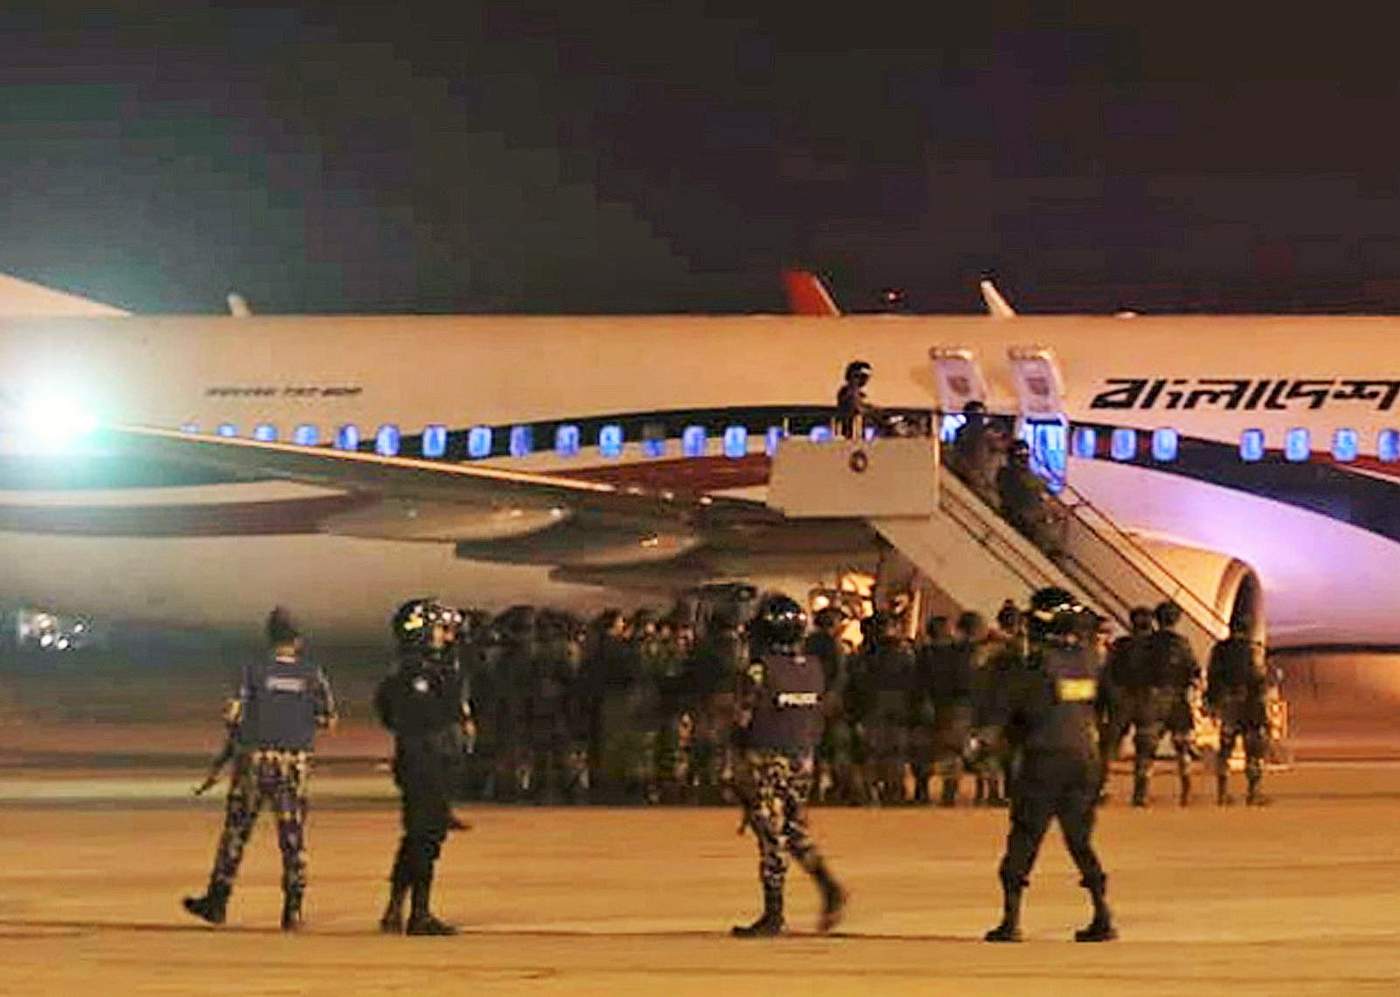 Los 142 pasajeros salieron ilesos, así como la tripulación del vuelo BG147, de la aerolínea nacional Biman Bangladesh Airlines, que salió del aeropuerto de Daca rumbo a Dubai. (EFE)